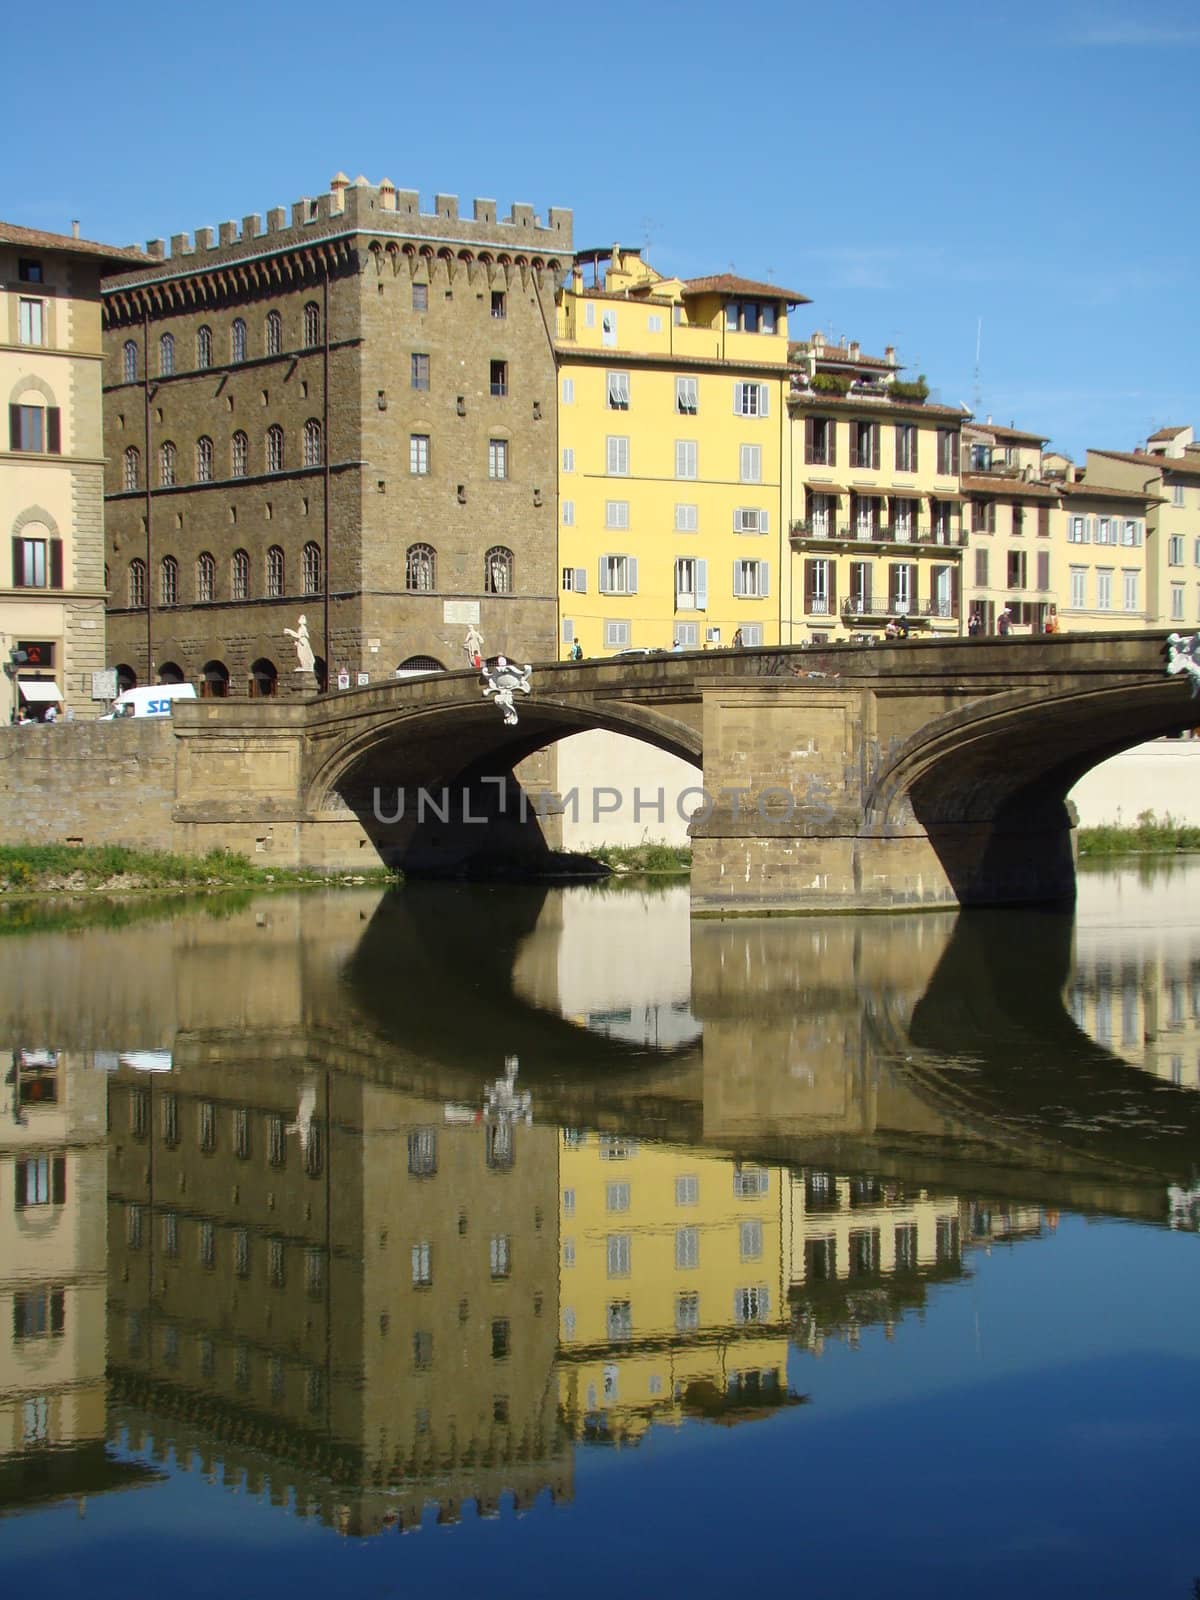 Palazzo Spini Ferroni on piazza Santa Trinita and Arno river, the grandest private medieval palazzo in Florence. 